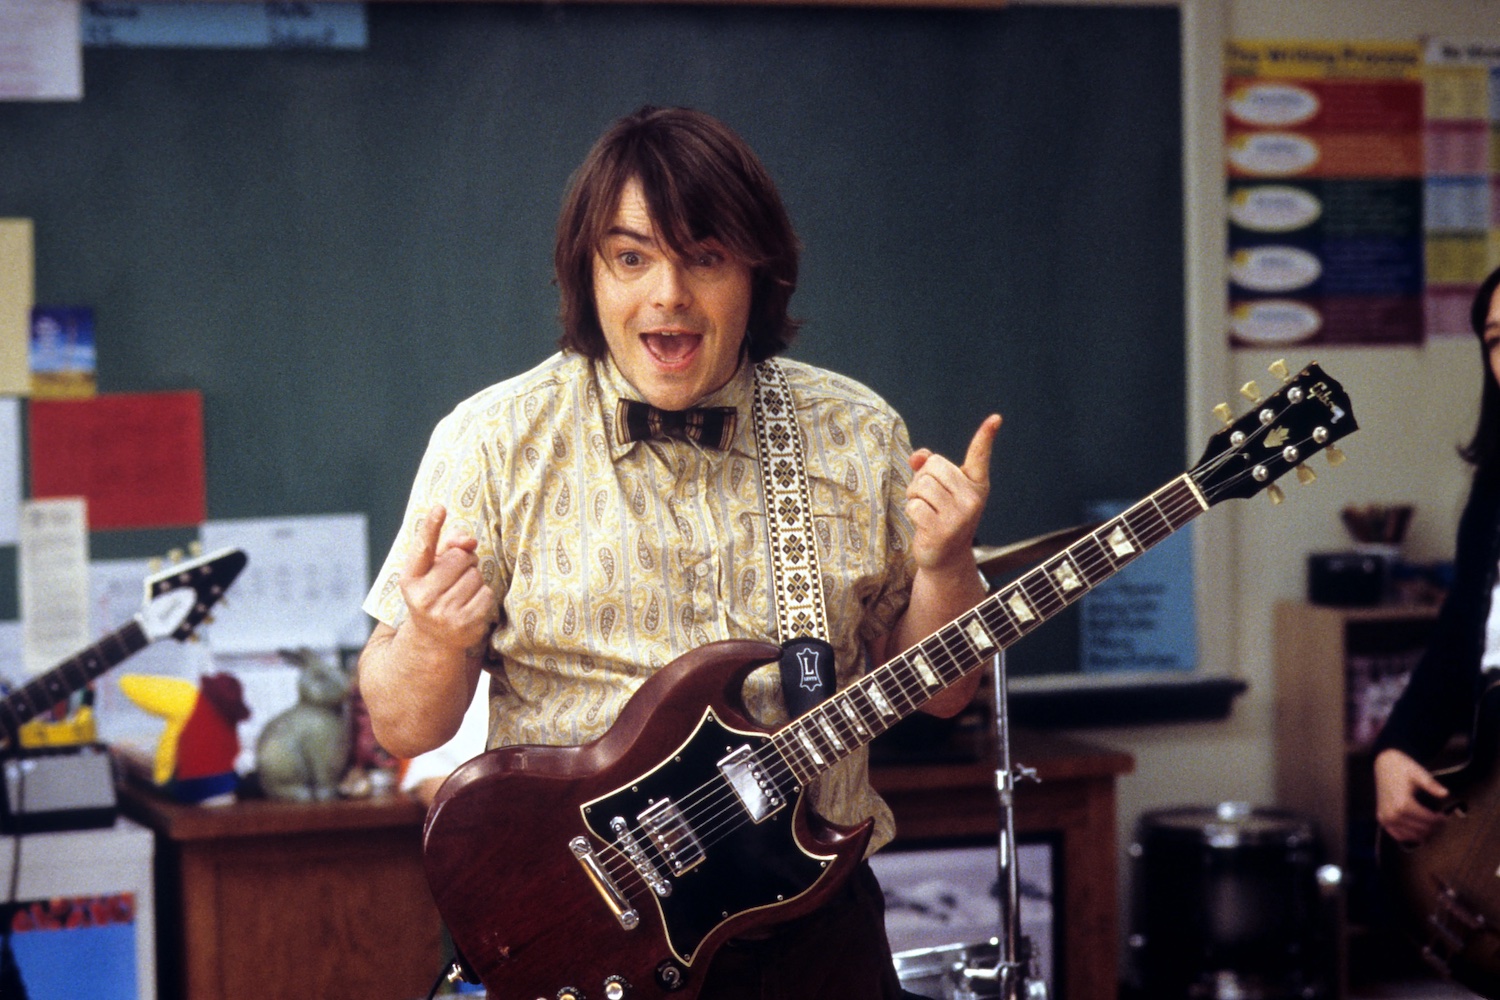 5 Reasons Why Jack Black's Dewey Finn Belongs at the Real School of Rock